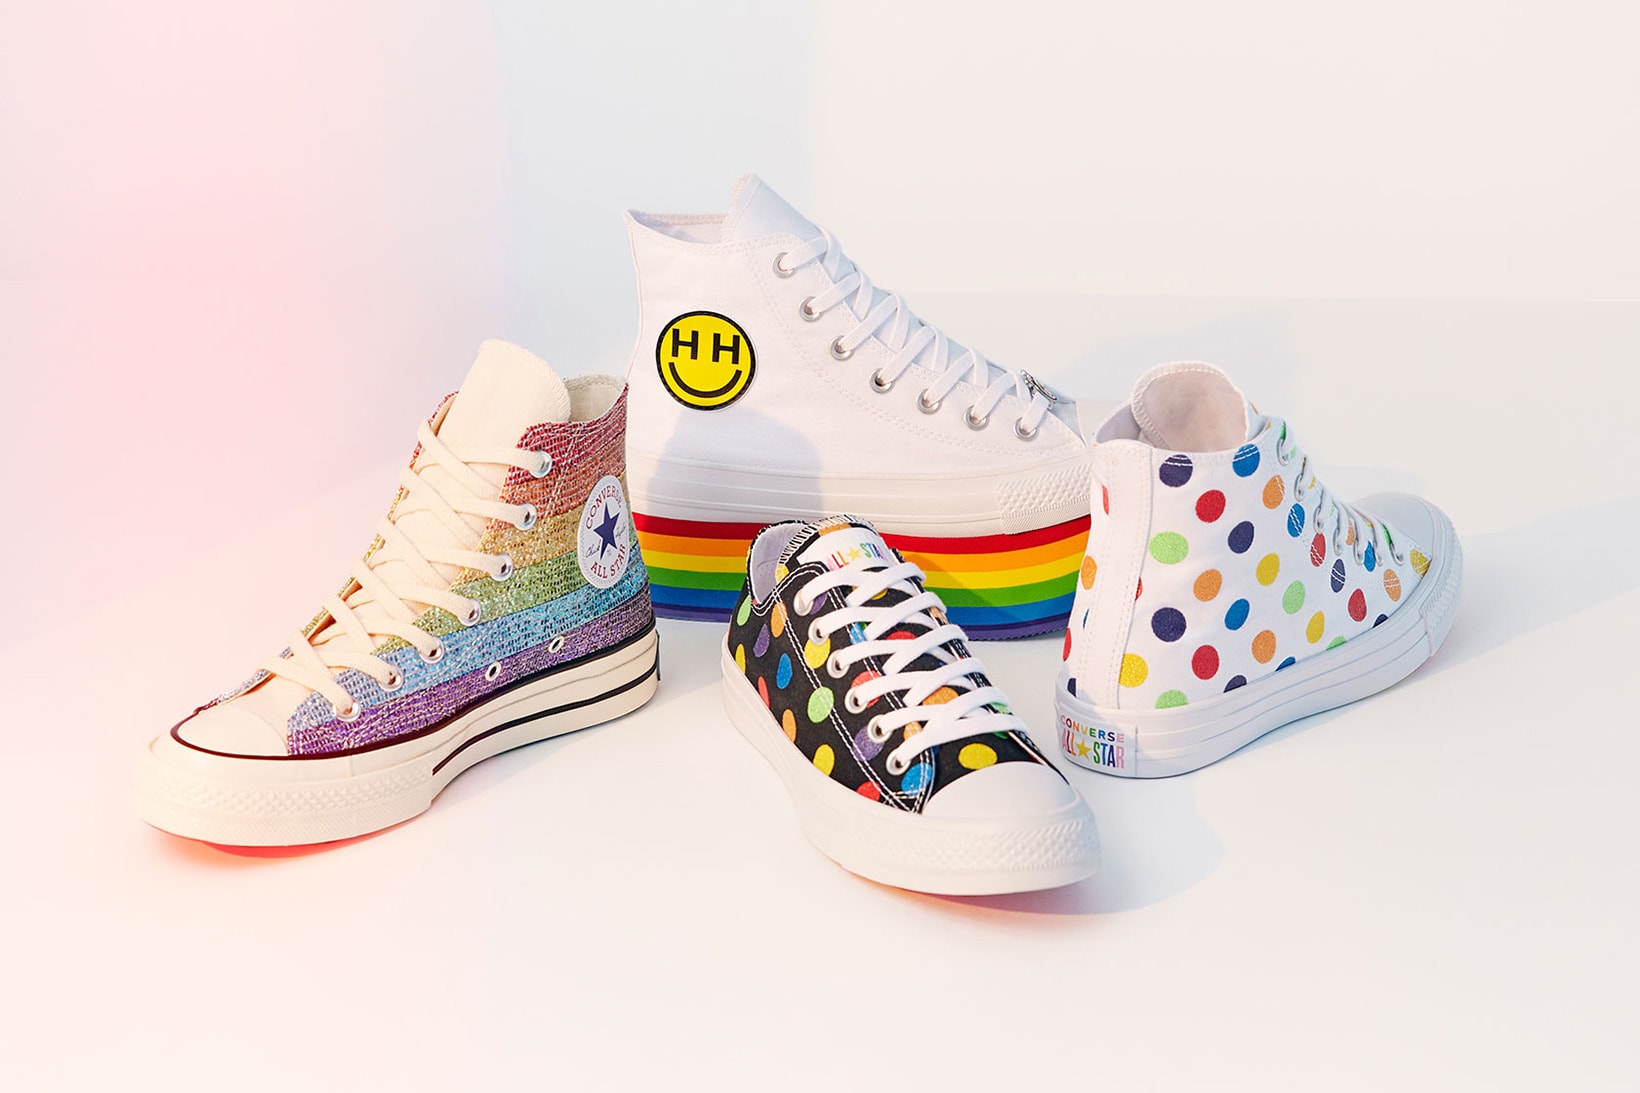 Converse Miley Cyrus Pride Designed Collection 2018 june footwear apparel